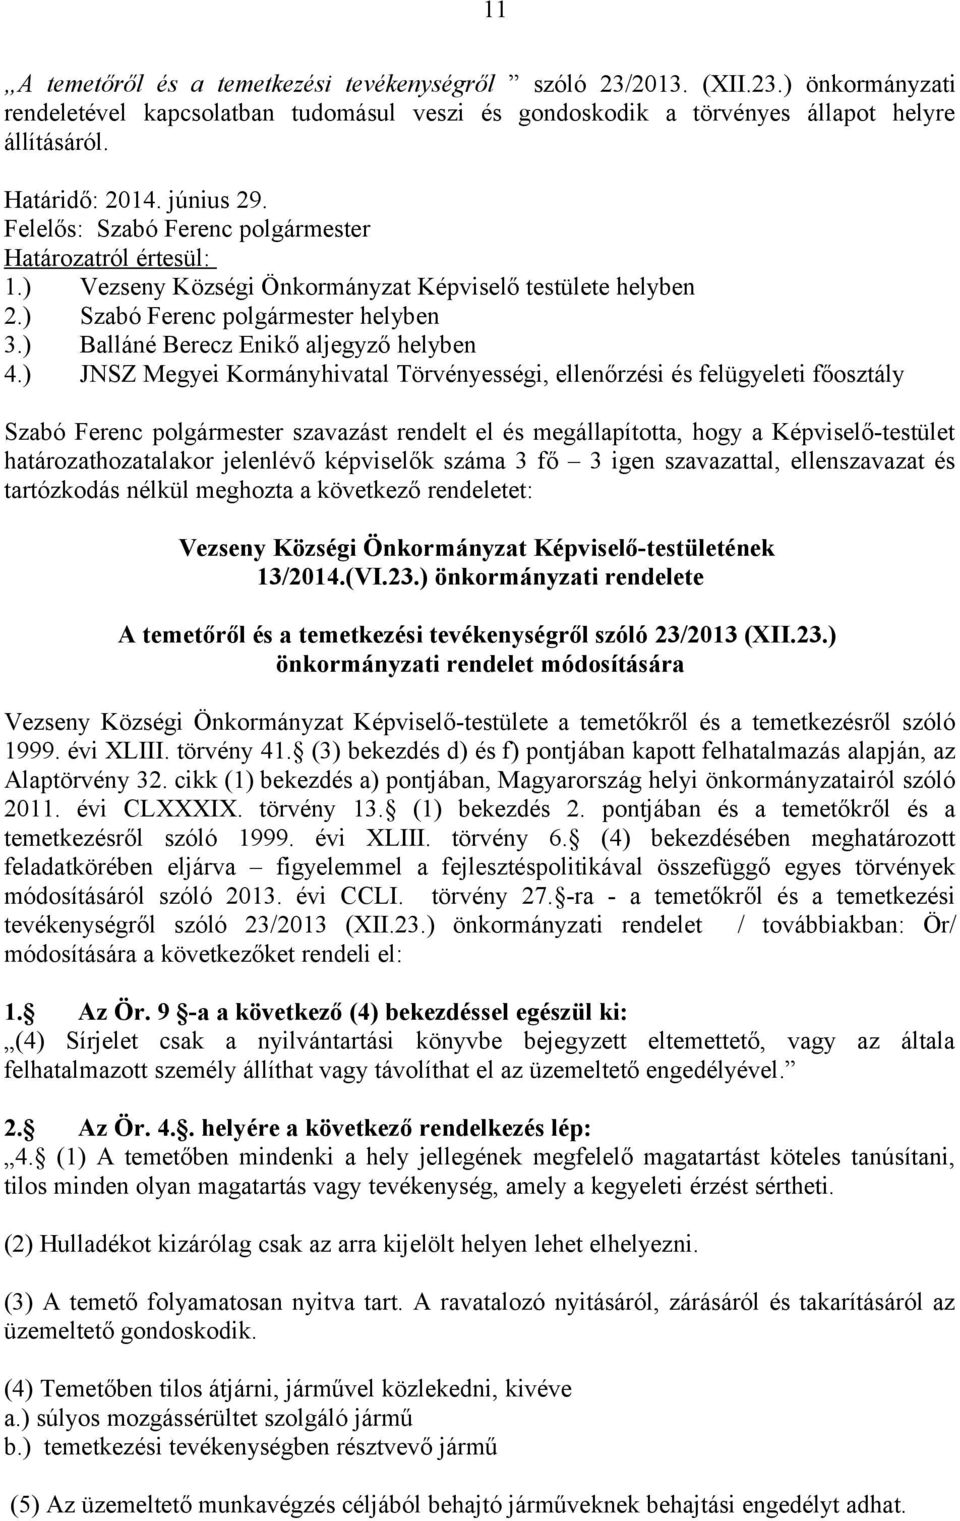 ) Balláné Berecz Enikő aljegyző helyben 4.) JNSZ Megyei Kormányhivatal Törvényességi, ellenőrzési és felügyeleti főosztály tartózkodás nélkül meghozta a következő rendeletet: 13/2014.(VI.23.